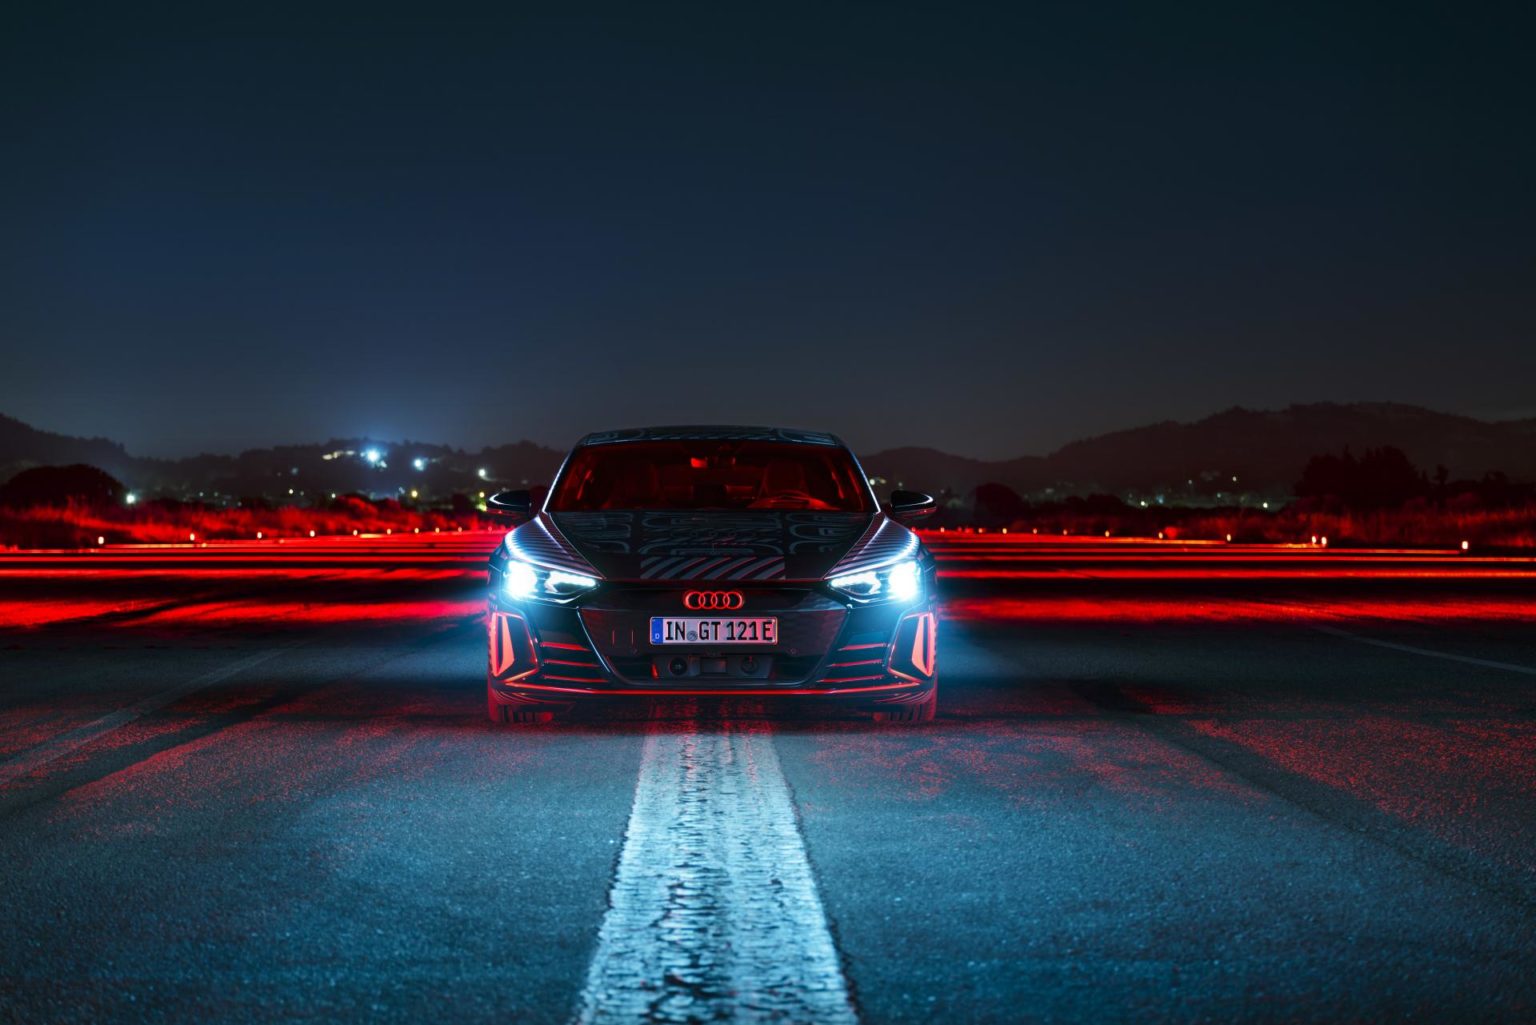 2021 wird Audi verstärkt Strom im Bereich der E-Mobilität geben. Unter anderem mit dem Audi RS e-tron GT, welcher als Porsche Taycan-Alternative, seinen Weg auf die Straße finden wird. Unsere Autoren Wolfgang und Dirk konnten diesen bereits Probe fahren und ihre Meinung zum sportlichen Stromer teilen. Laut Auto Bild sei auch eine Shooting Brake-Variante des Stromers vorstellbar. Quasi, als elektrifizierte Alternative zum Audi RS6. So abwegig erscheint der Gedankengang nicht. Teilt sich der e-tron GT bereits heute 40 Prozent Gleichteile mit dem Taycan. Von dem die zweite Karosserievariante namens Sport Turismo bald das Licht der Welt erblicken soll. Ob es in der Tat zu einem Audi e-tron GT Shooting Brake reicht, wird der Markt beziehungsweise die Nachfrage nach einem solchen bestimmen. Ein RS e-tron GT Shooting Brake könnte theoretisch also in Zukunft den RS 6 beerben. Des Weitere gilt Audi mit dem seligen RS2 als Erfinder des Power-Kombis und könnte diese Geschichte nun in die Zukunft führen. Auch der RS2 wurde einst zusammen mit Porsche entwickelt, wie die Auto Bild zu verstehen gibt. Warum also nicht einen elektrischen Sportkombi als moderne Hommage an den fünfzylindrigen Urahn? Wie vom Taycan gewohnt würde man einige der Linienführungen übernehmen, aber natürlich nicht ohne seine ganz eigene Audi-Konturen mit einzubringen. Beim E-Motor beziehungsweise Antrieb generell kann man davon ausgehen, dass man auf die Motorisierung des RS e-tron GT setzt, welcher 598 PS (646 PS im Overboost) leistet. Damit soll das Auto in rund zwölf Sekunden von 0 auf 200 km/h sprinten und eine Spitze von etwa 250 km/h erreichen. In etwas unter 3,5 Sekunden beschleunigt der Wagen auf 100 km/h. Die Reichweite dürfte bei etwa 430 Kilometern liegen. Der normale e-tron GT wird wohl ab knapp unter 100.000 Euro zu haben sein und Anfang 2021 zu den Kunden rollen. Falls eine Shooting-Brake-Variante kommen sollte, dürfte sie ein paar Tausender mehr kosten Quelle: AutoBild - Ein Audi RS e-tron GT Shooting Brake wäre ein elektrischer RS 6